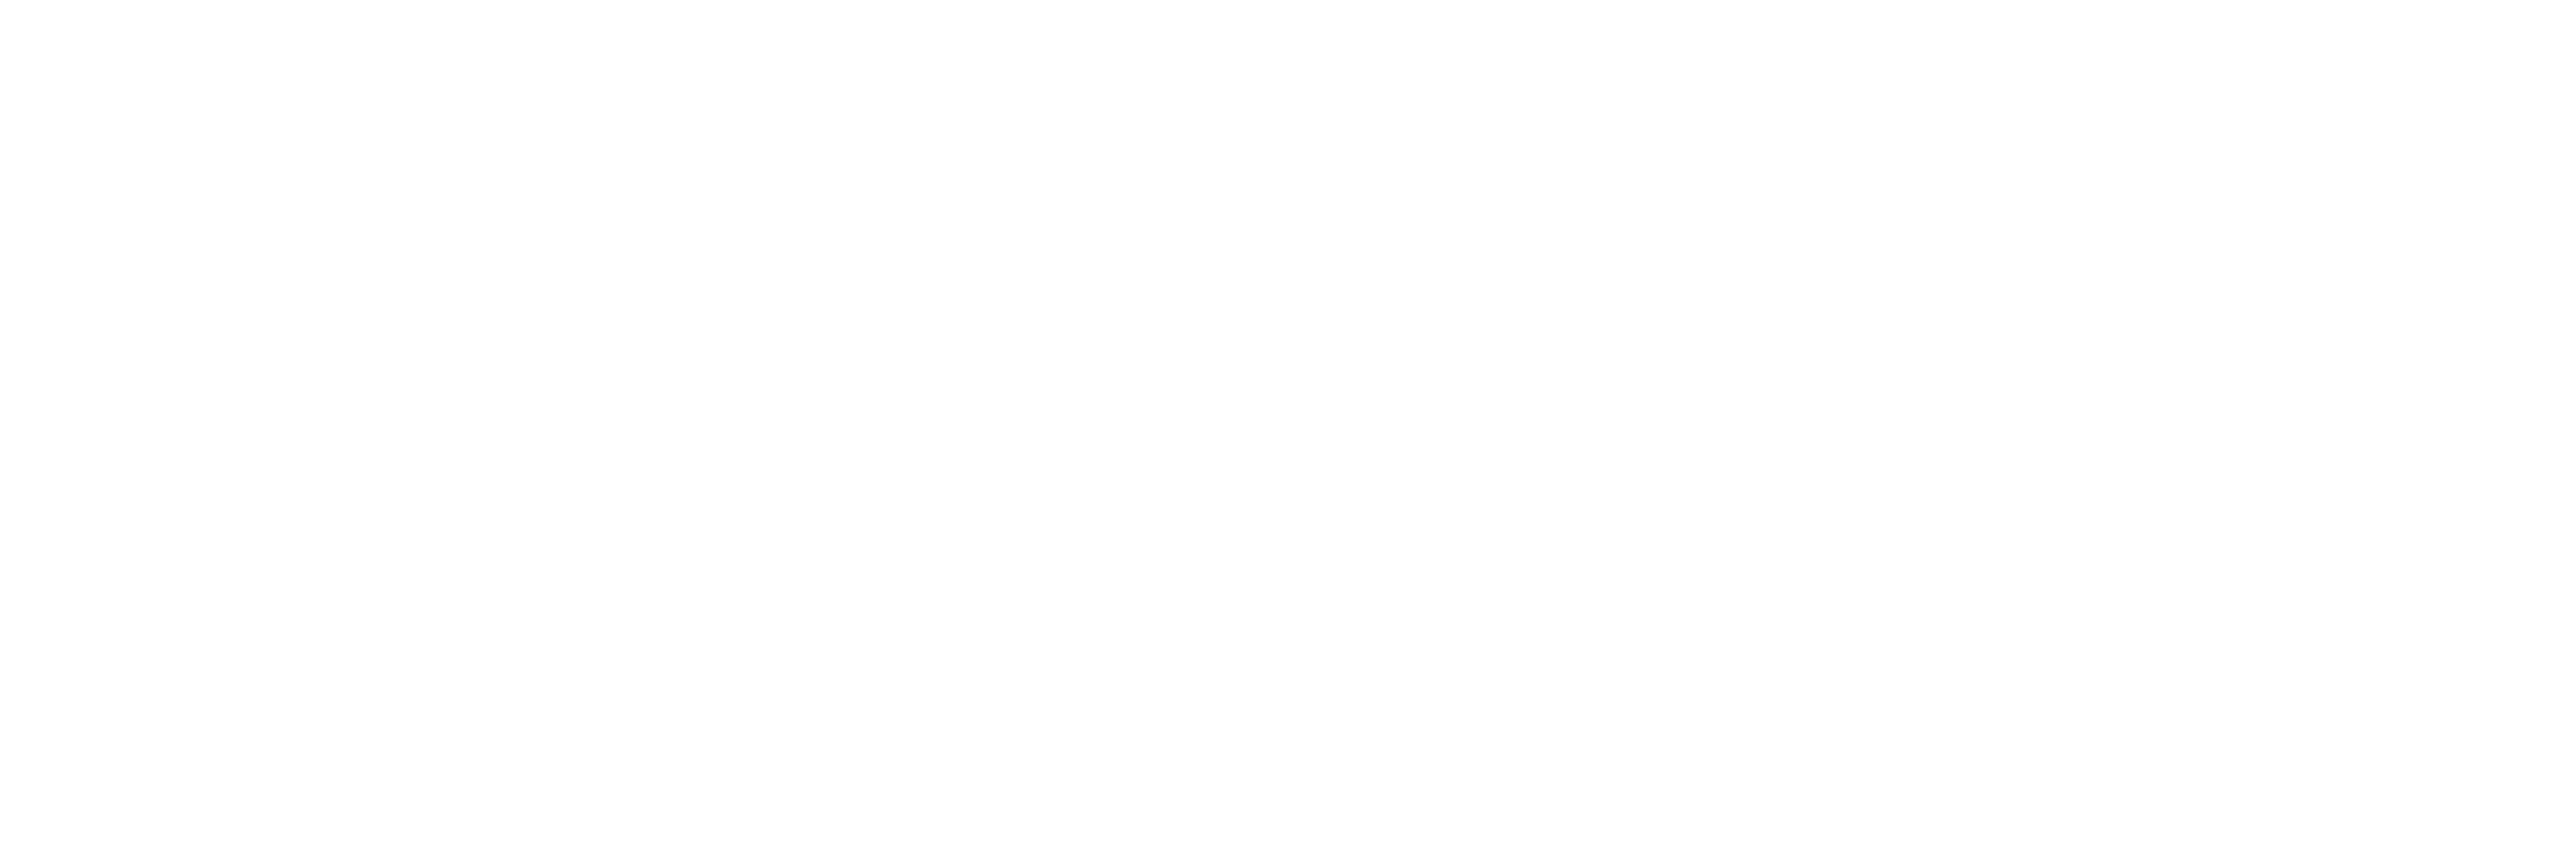 Merlin's Blog